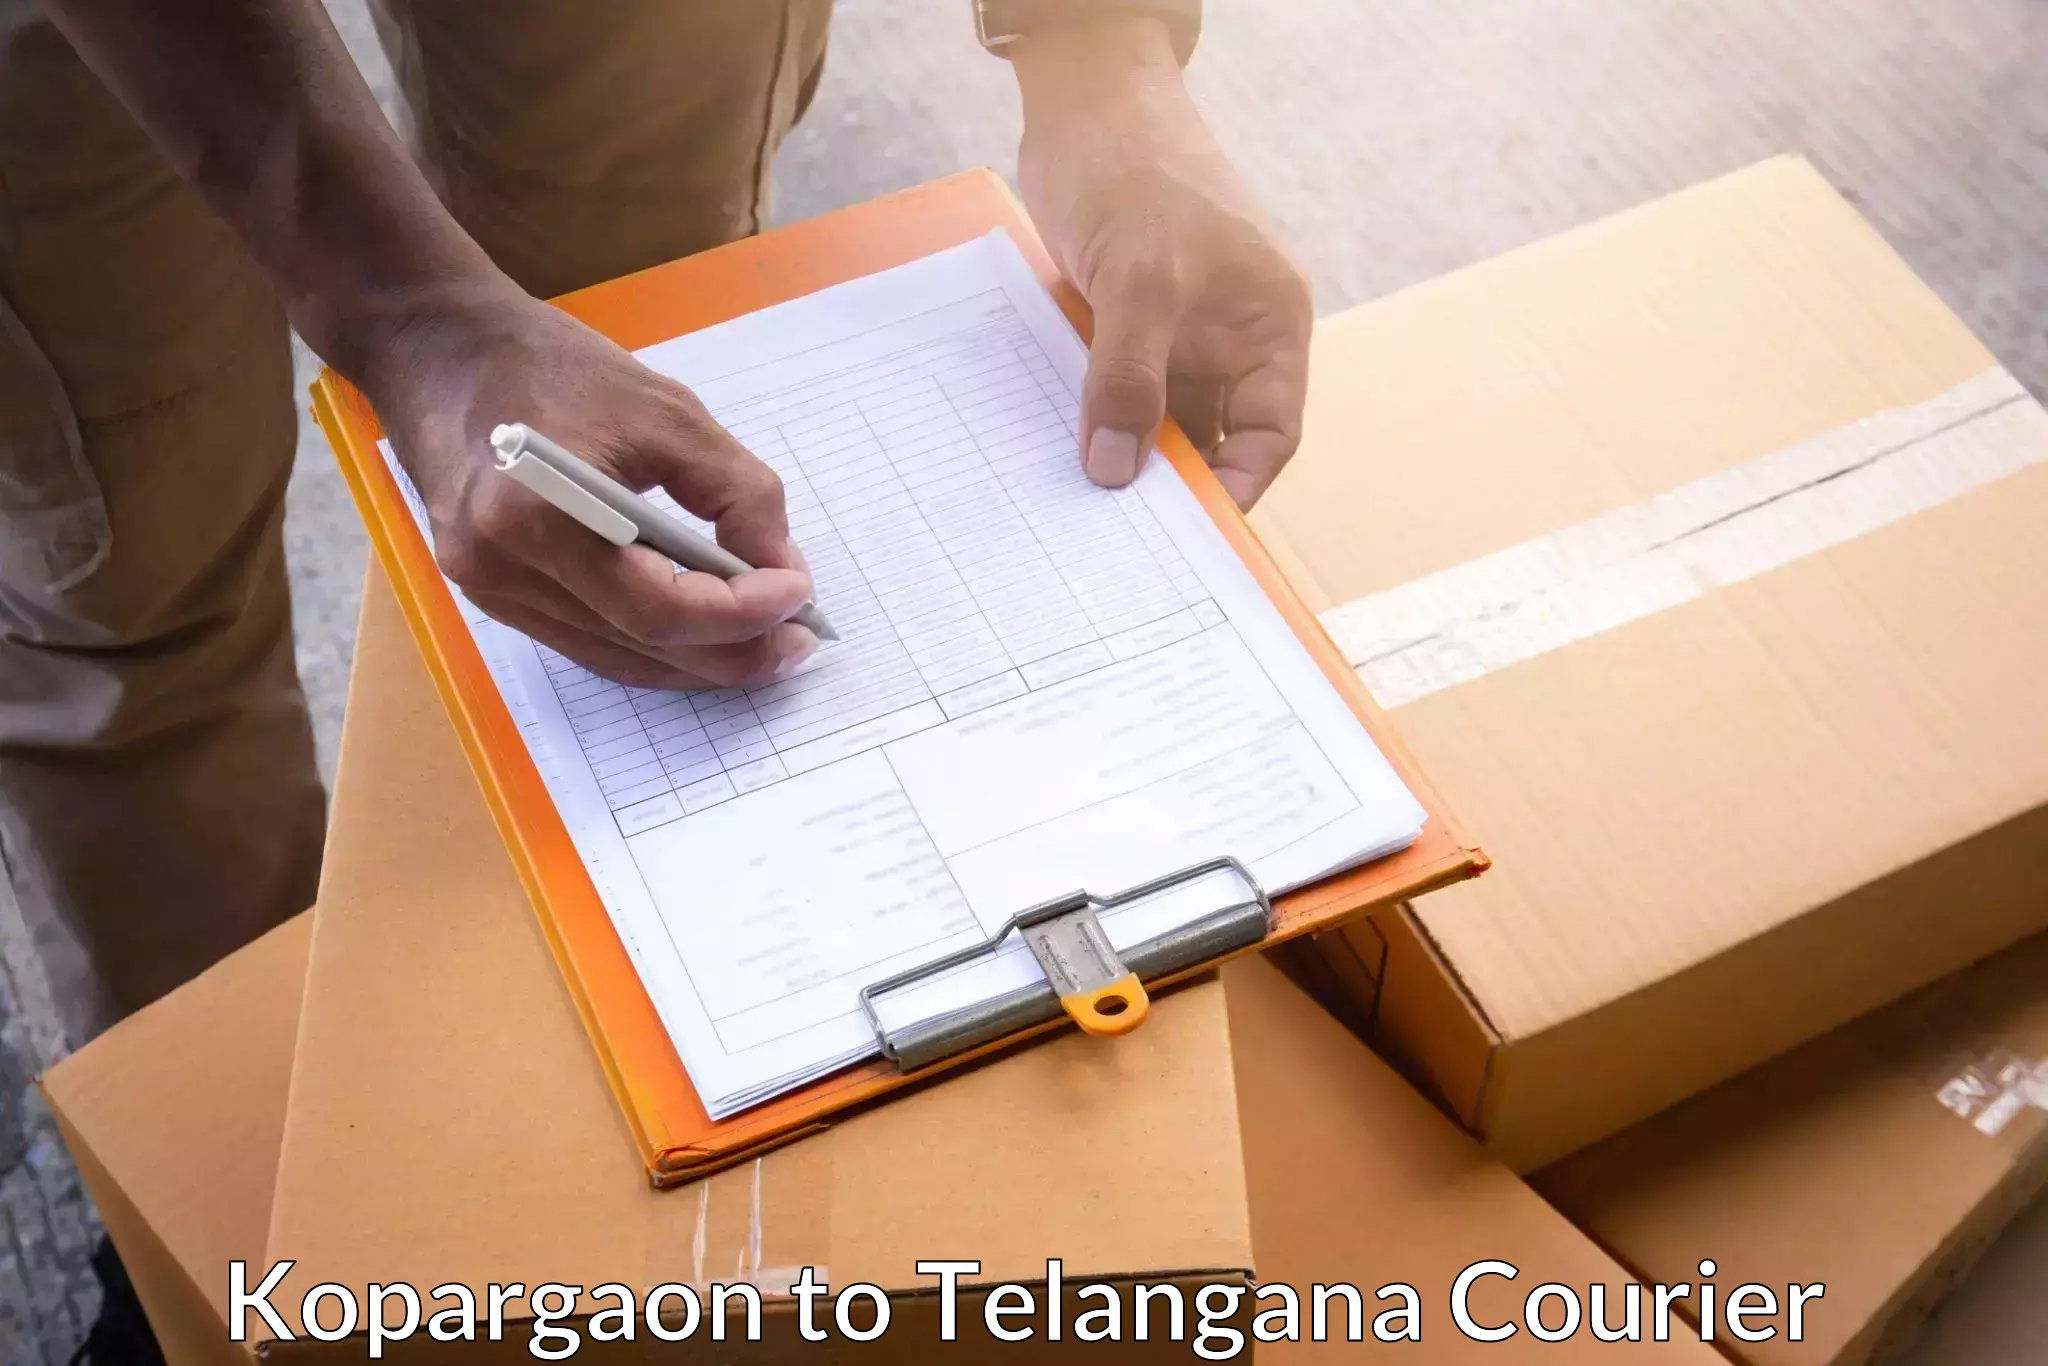 Efficient parcel service Kopargaon to Hayathnagar